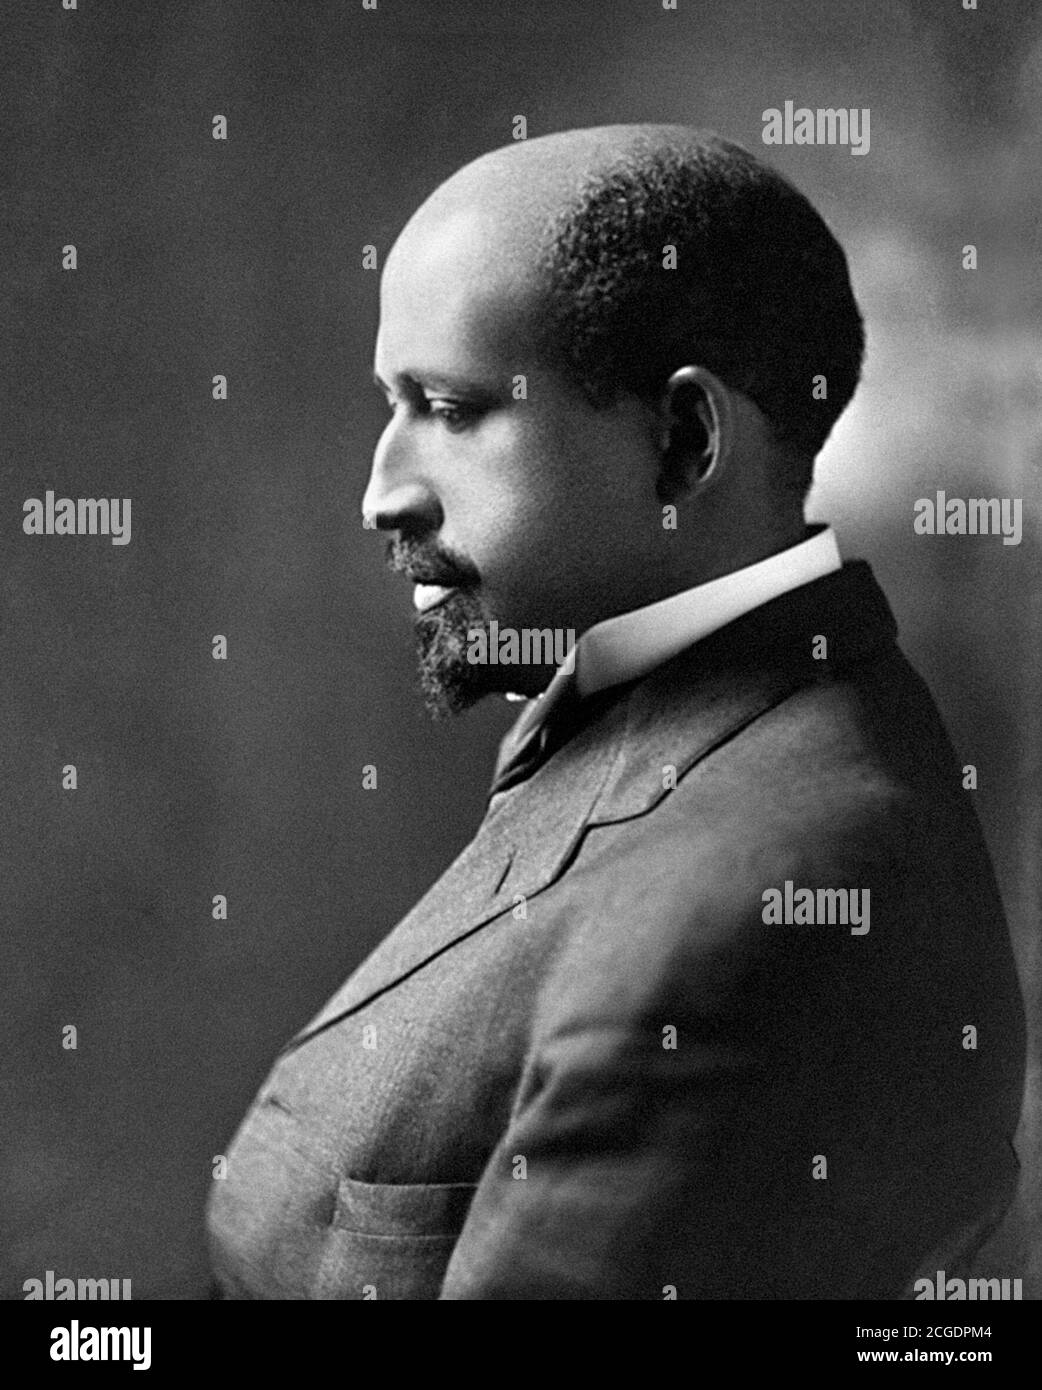 W E B Du Bois. Portrait of William Edward Burghardt Du Bois (1868-1963) by Addison N. Scurlock, 1911. Du Bois was an American sociologist, socialist, historian and civil rights activist. Stock Photo